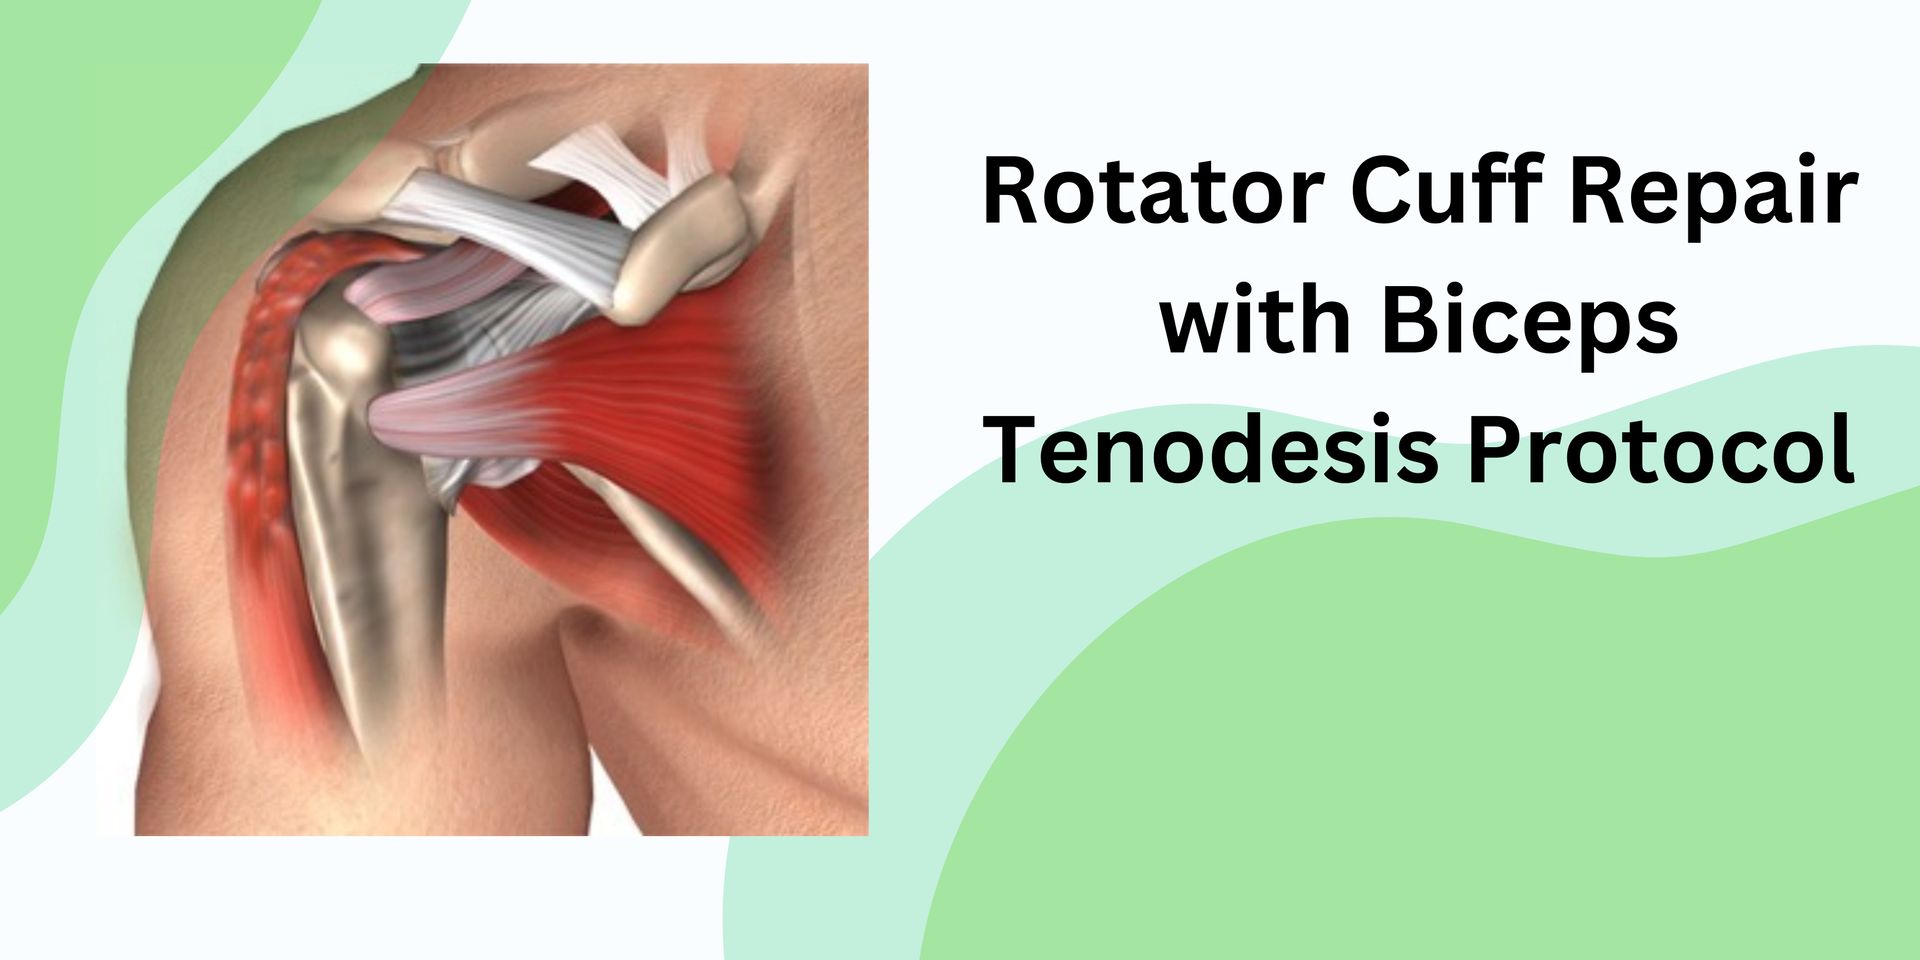 Rotator Cuff Repair with Biceps Tenodesis Protocol